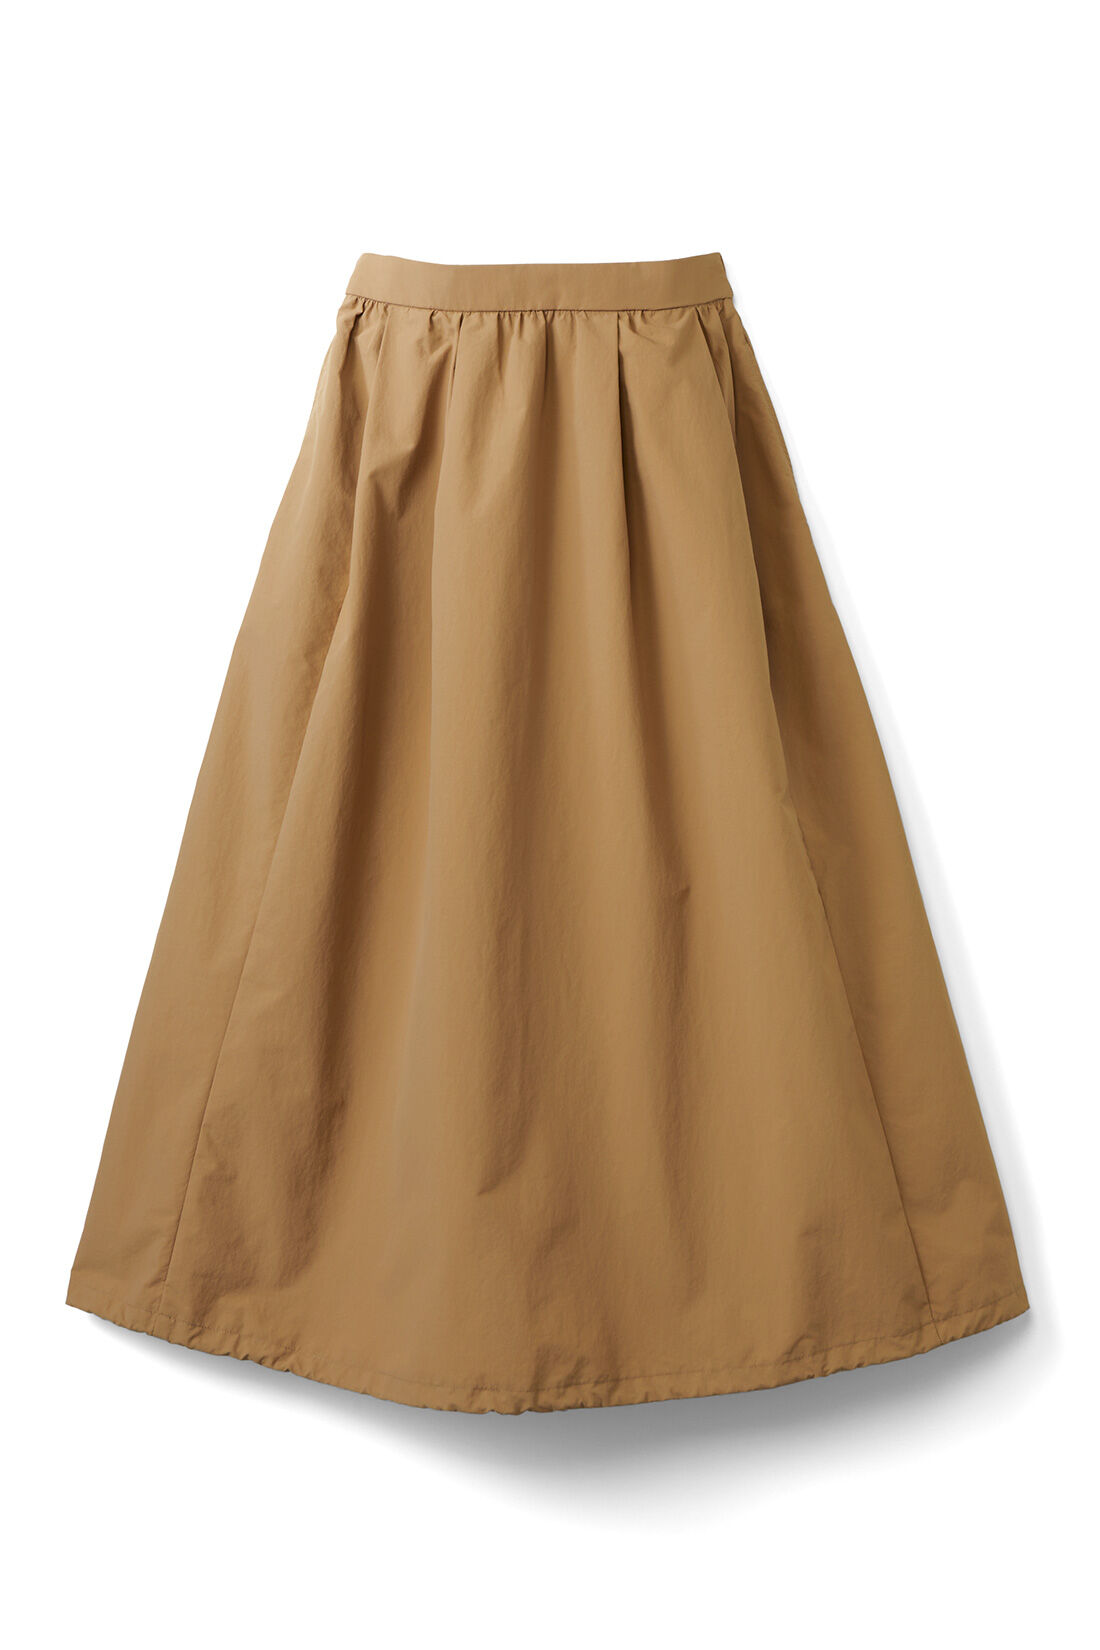 IEDIT|IEDIT[イディット]　撥水＆UVカットがうれしい 2-WAYシルエットスカート|ドロストを広げるとたっぷりのフレアースカートにも。2-WAYで楽しめます。